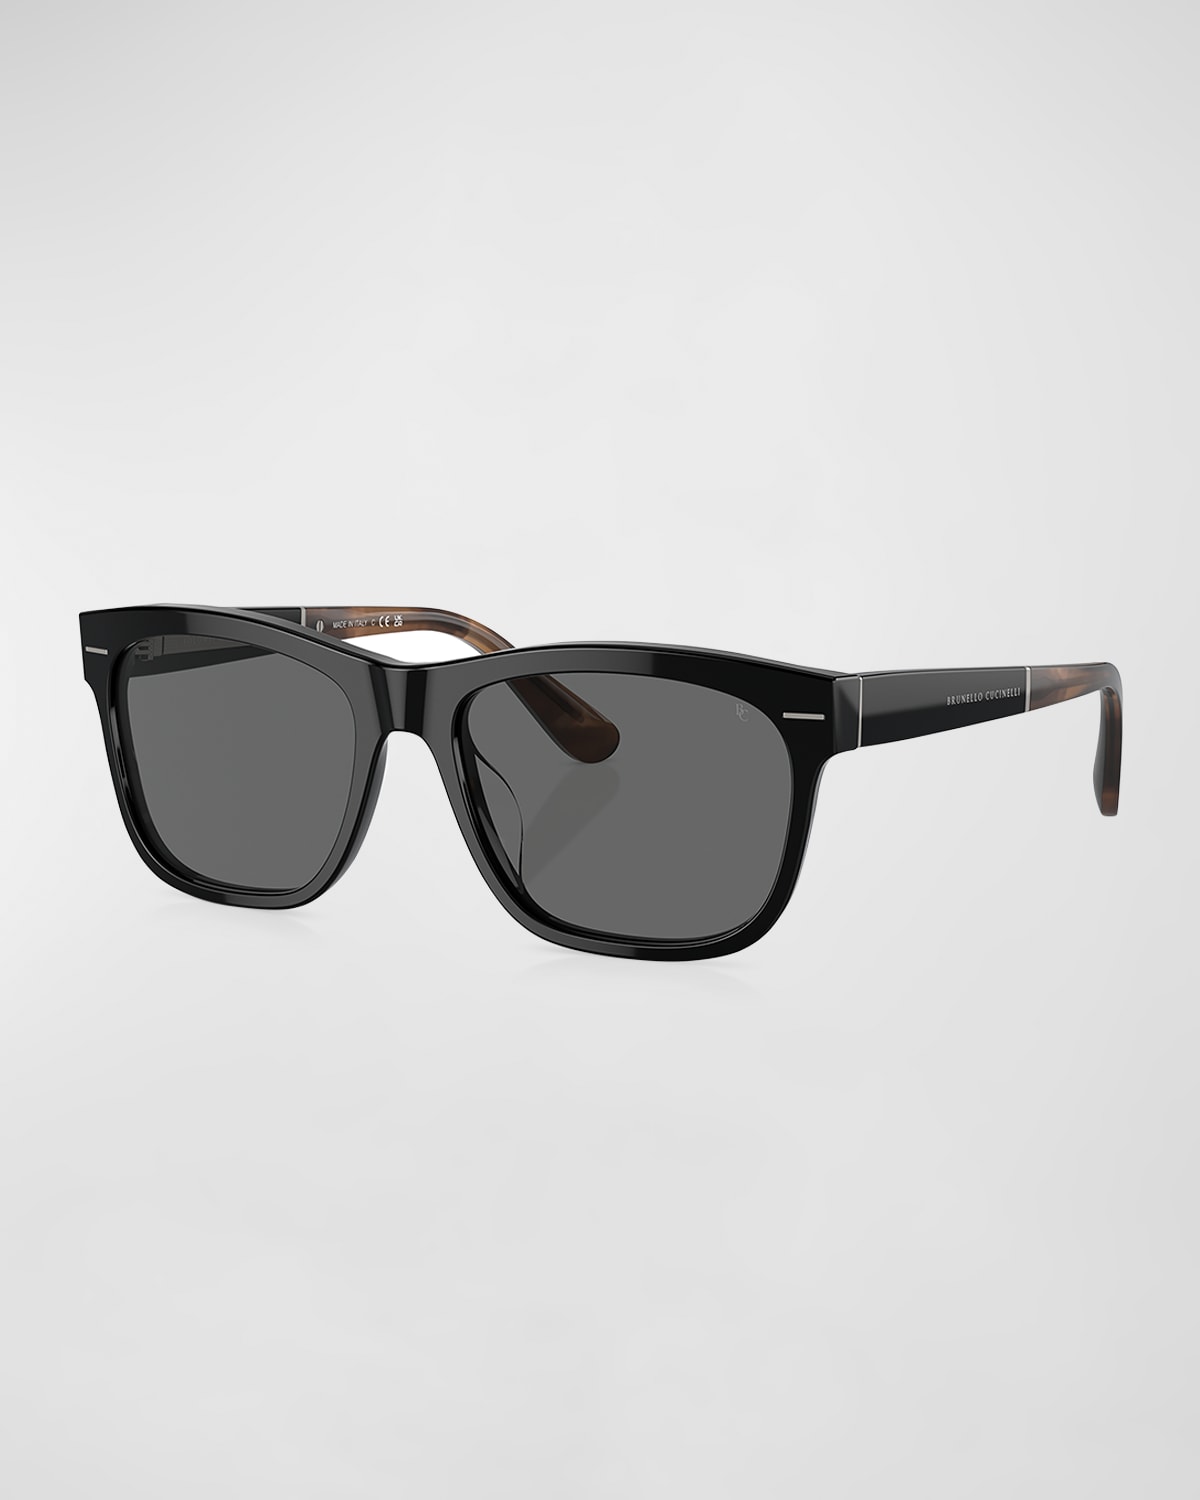 Men's Acetate Square Sunglasses